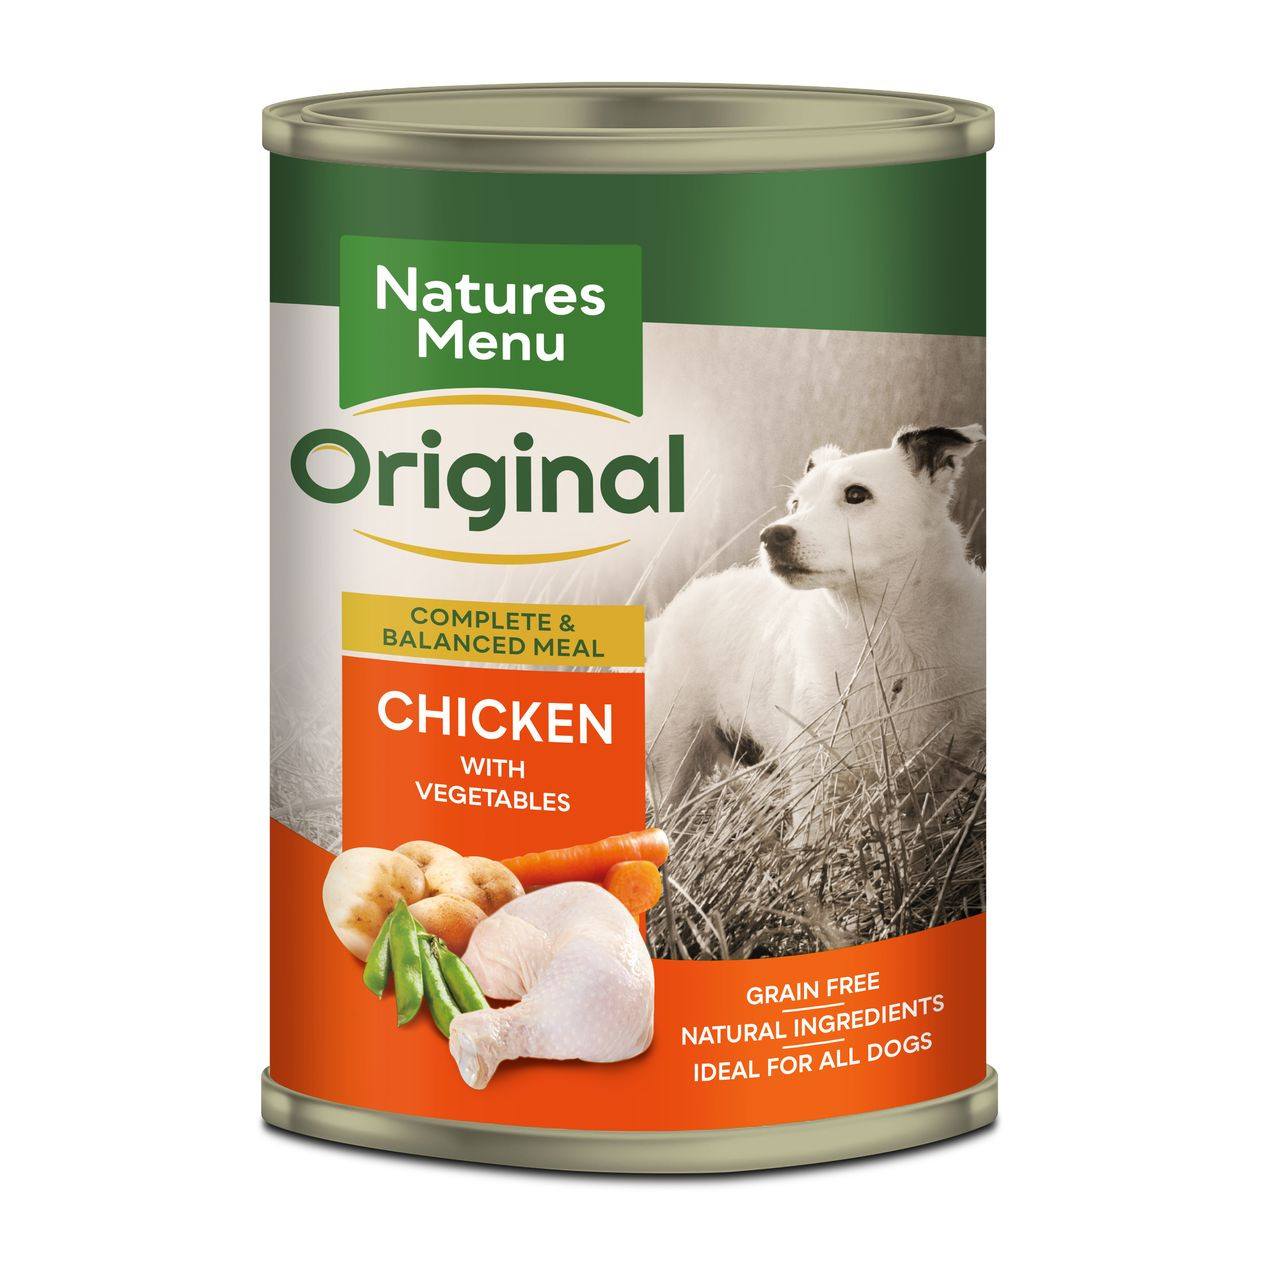 Natures Menu Canned Dog Food VioVet.co.uk FREE